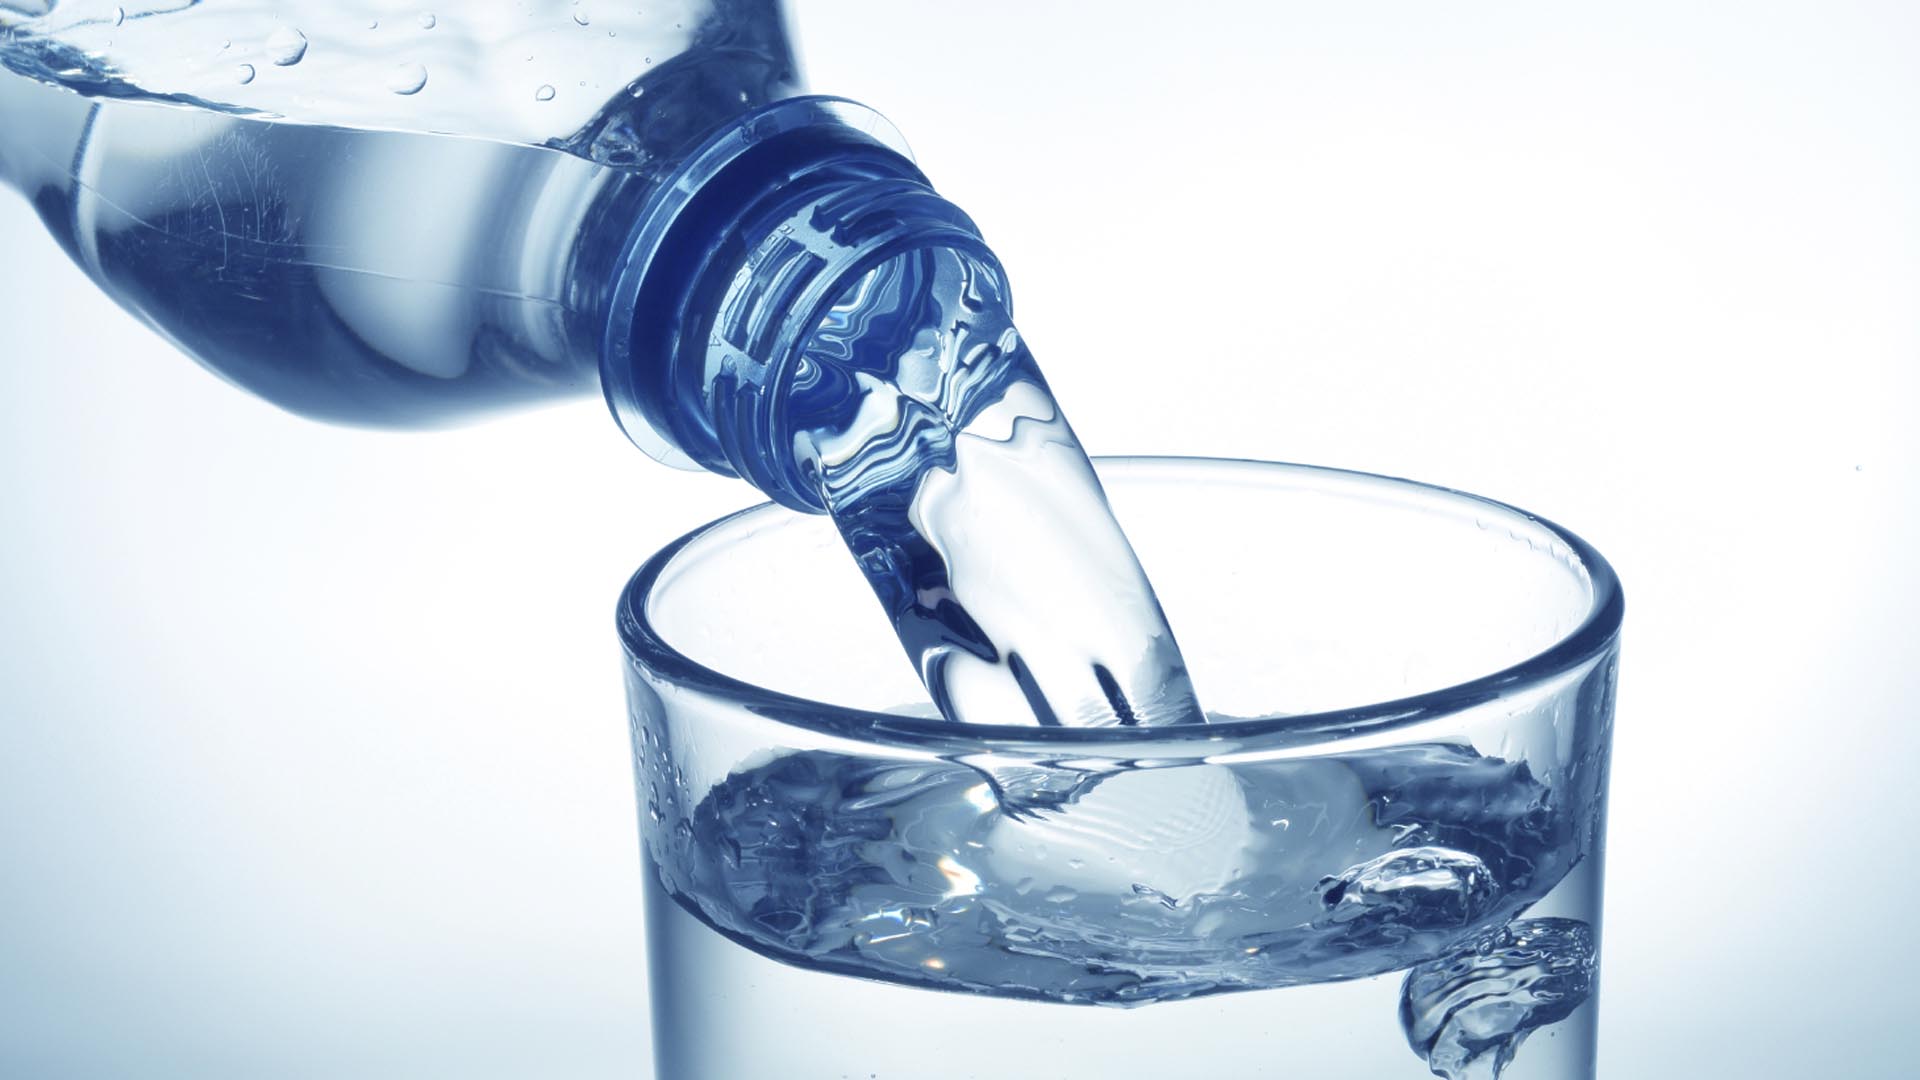 Los investigadores señalan que podría ser utilizado para filtrar otros líquidos como la leche o el vino